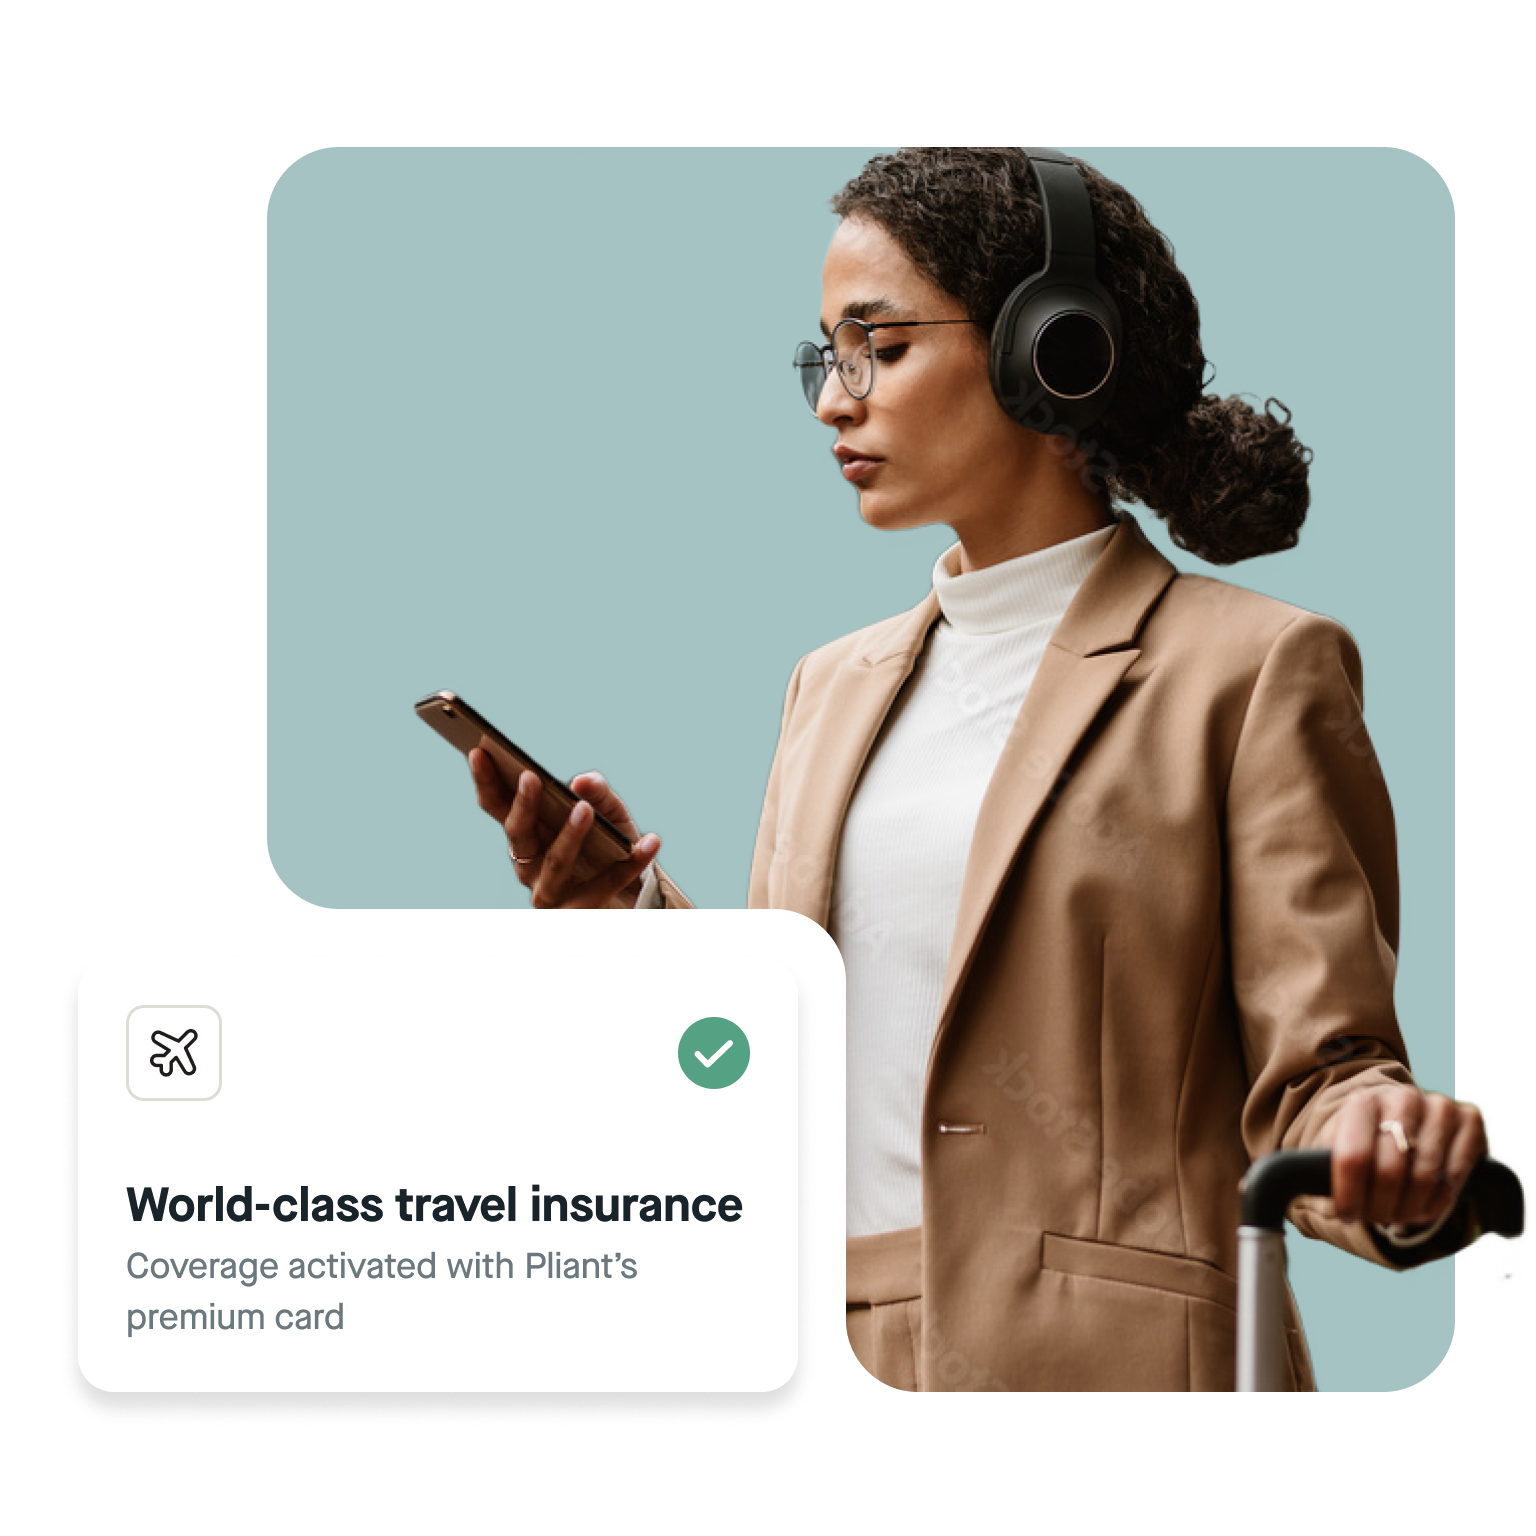 Infinite_Travel Insurance